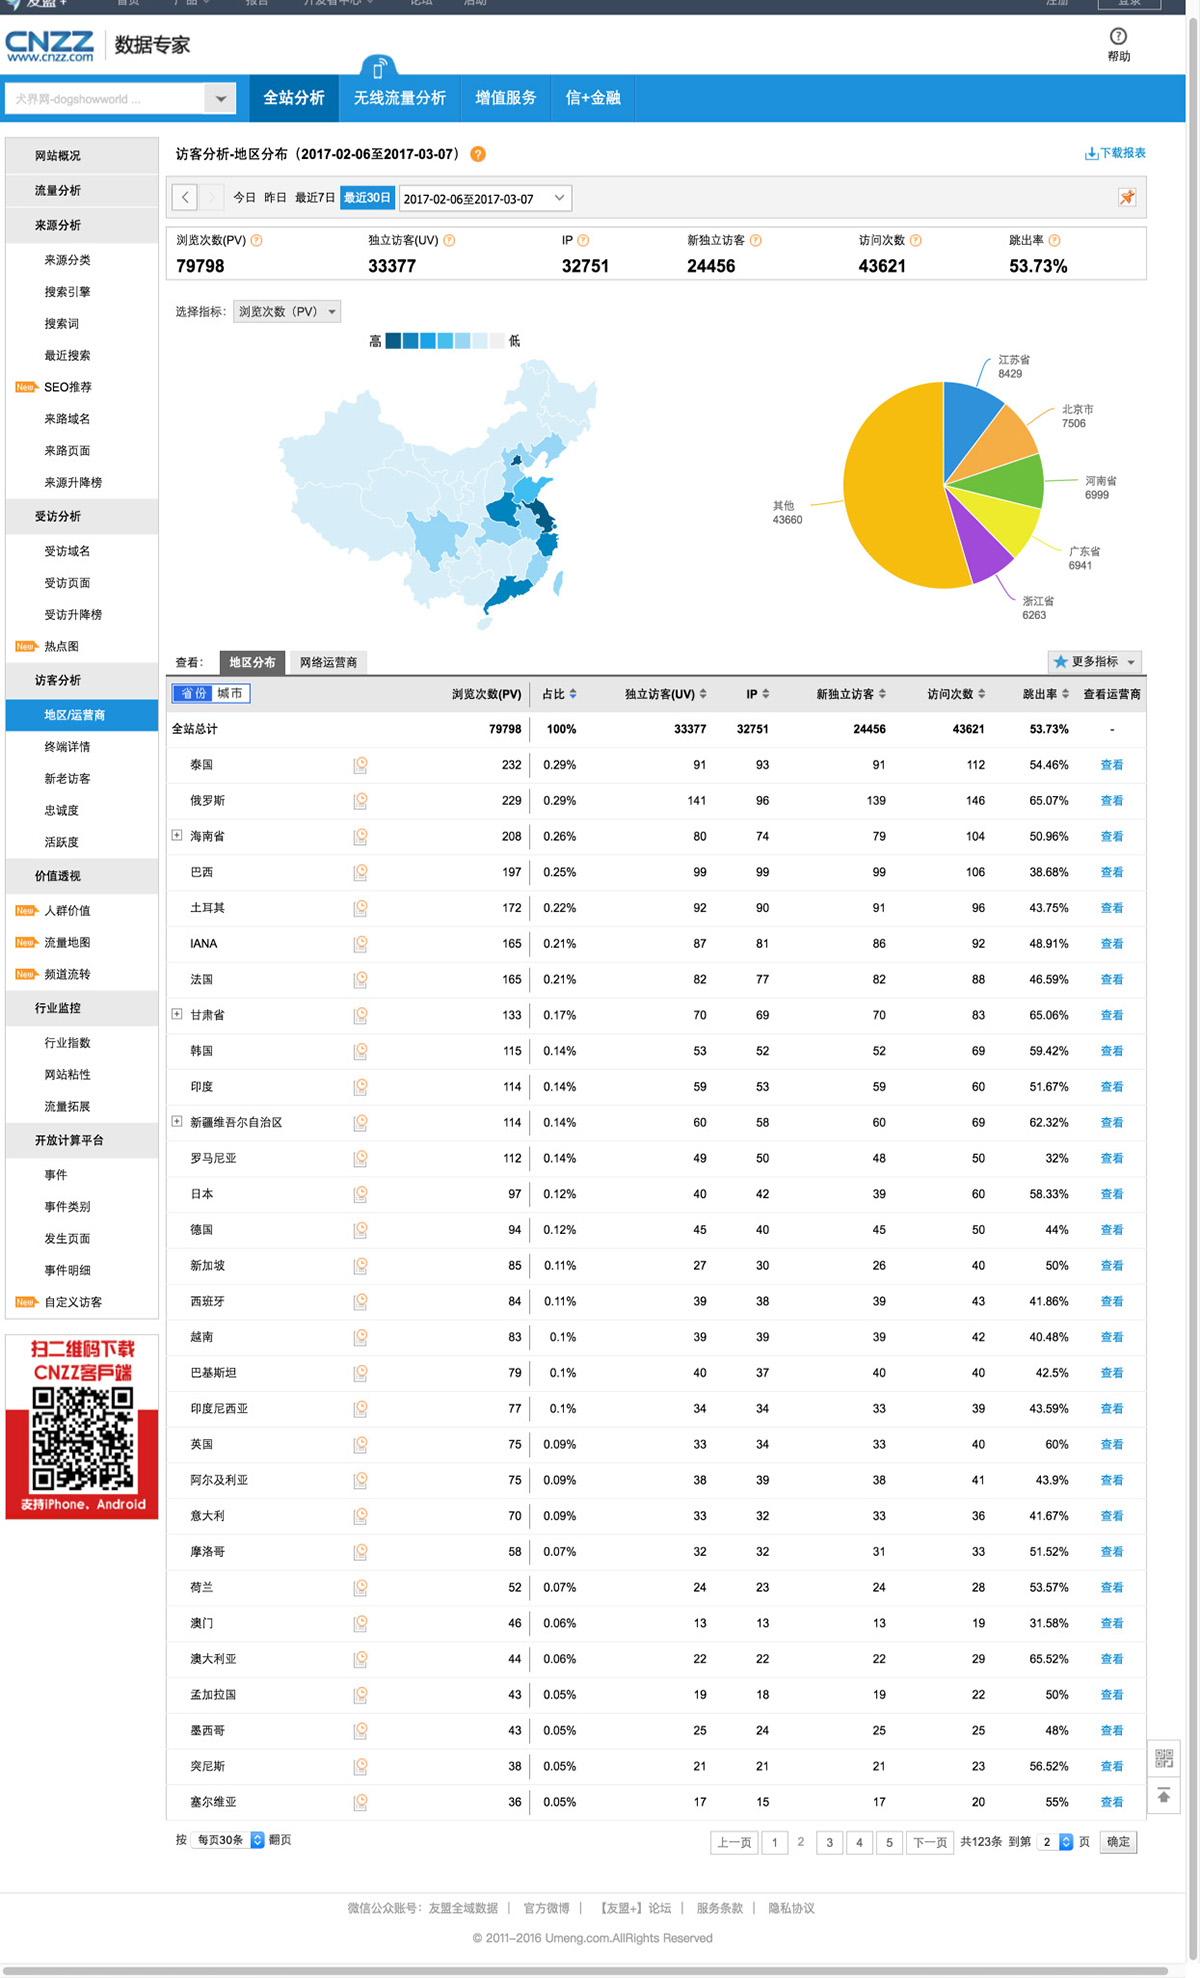 2犬界网_访客分析_地区分布_流量统计_网站分析_数据专家cnzz.com